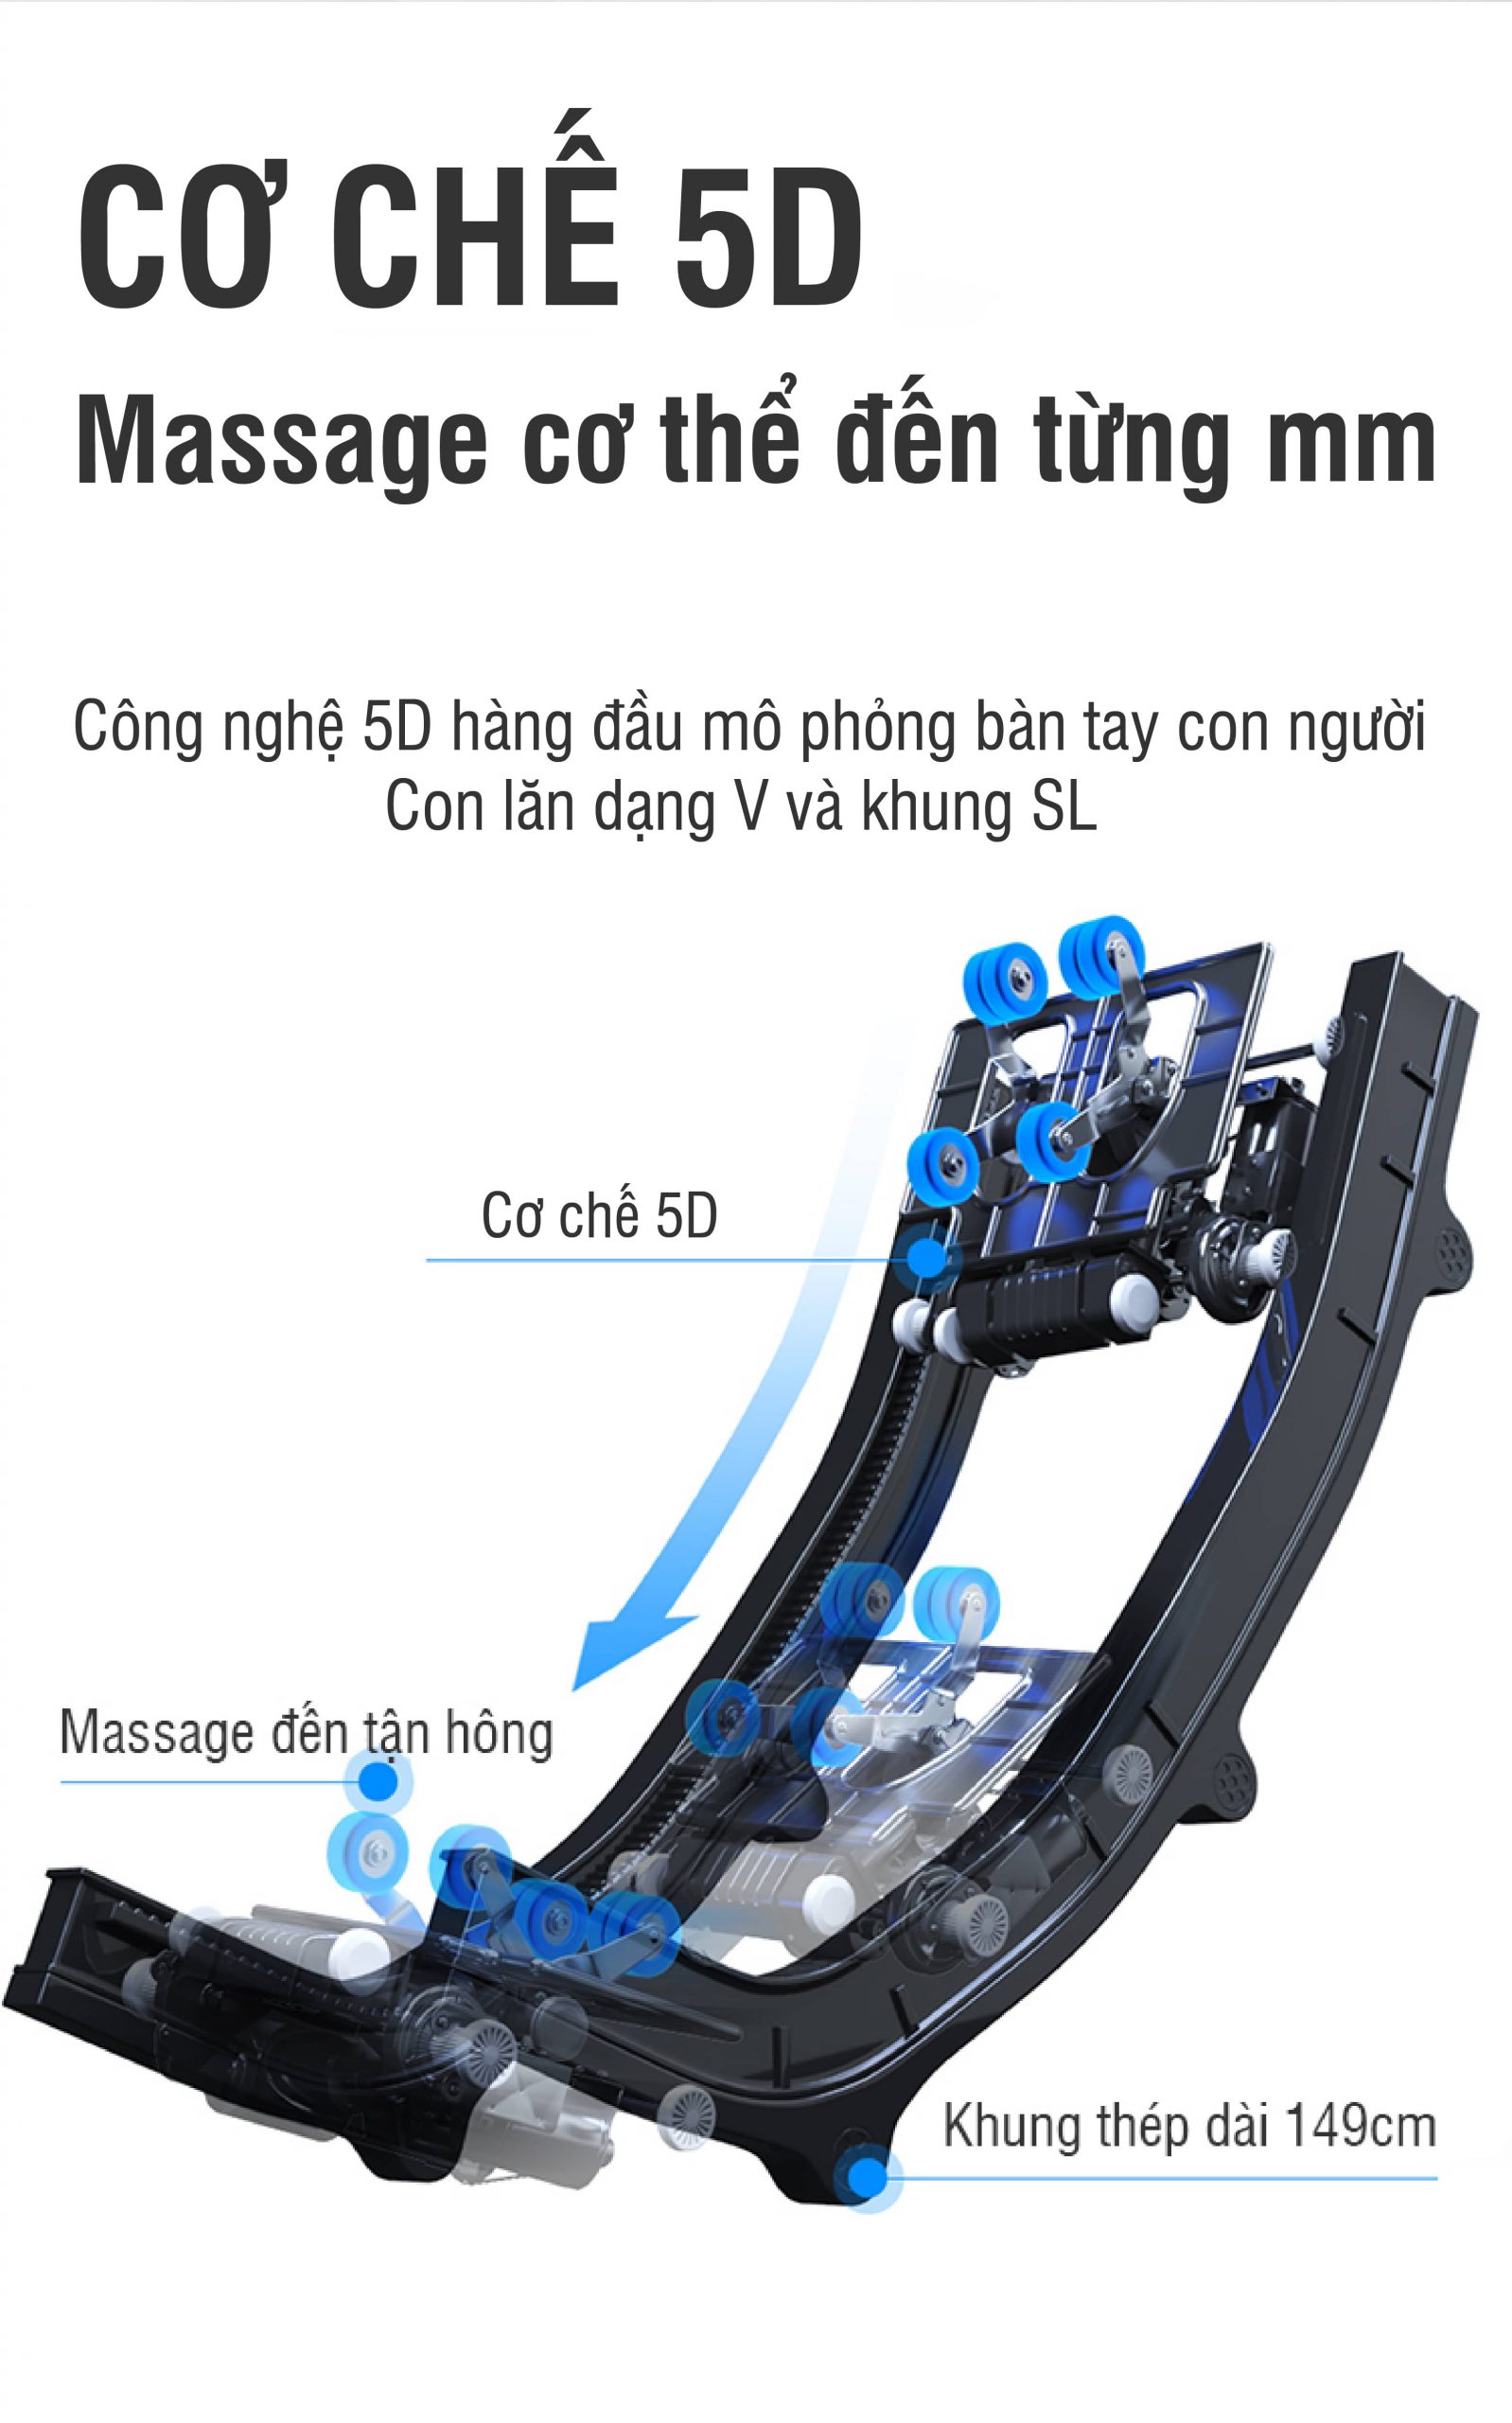 Công nghệ massage 5D giúp định vị nắn chỉnh lại phần cột sống